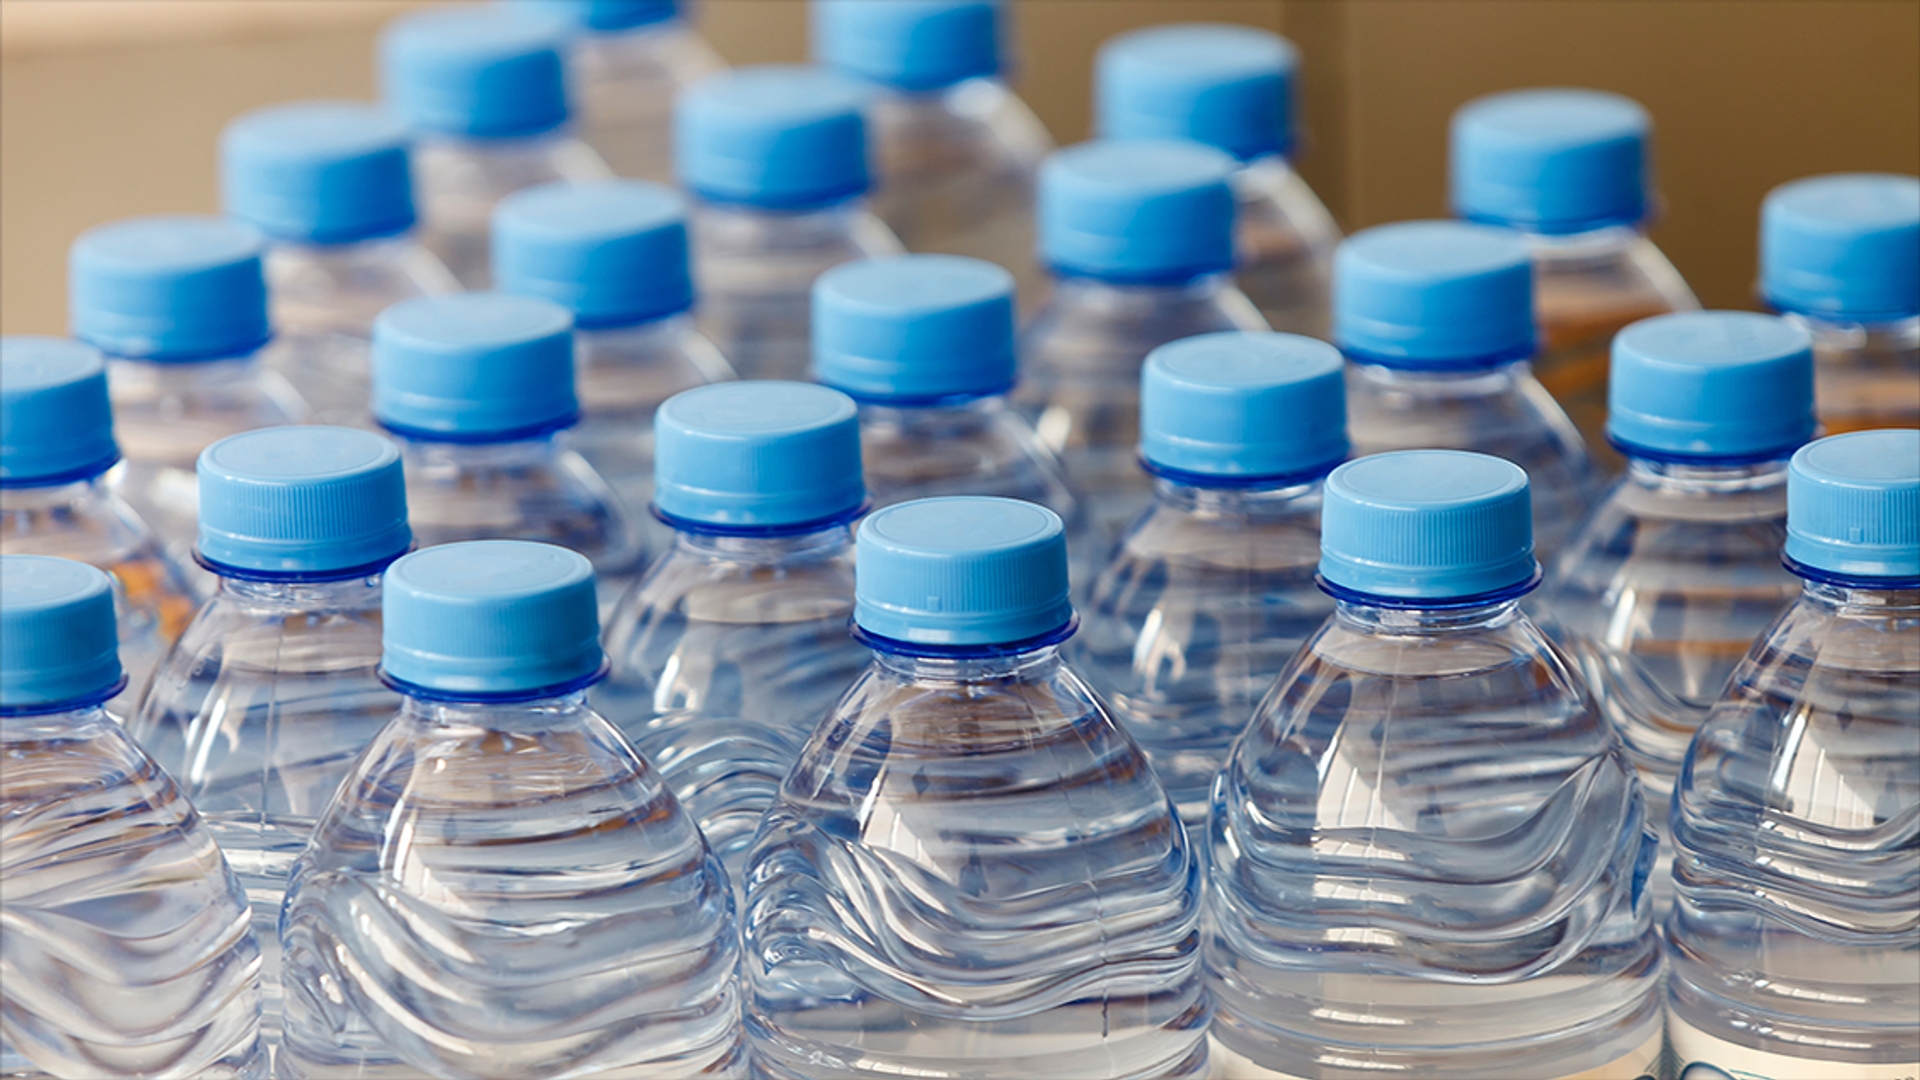 Afbeelding van Onderzoek: honderdduizenden deeltjes plastic in flessen water